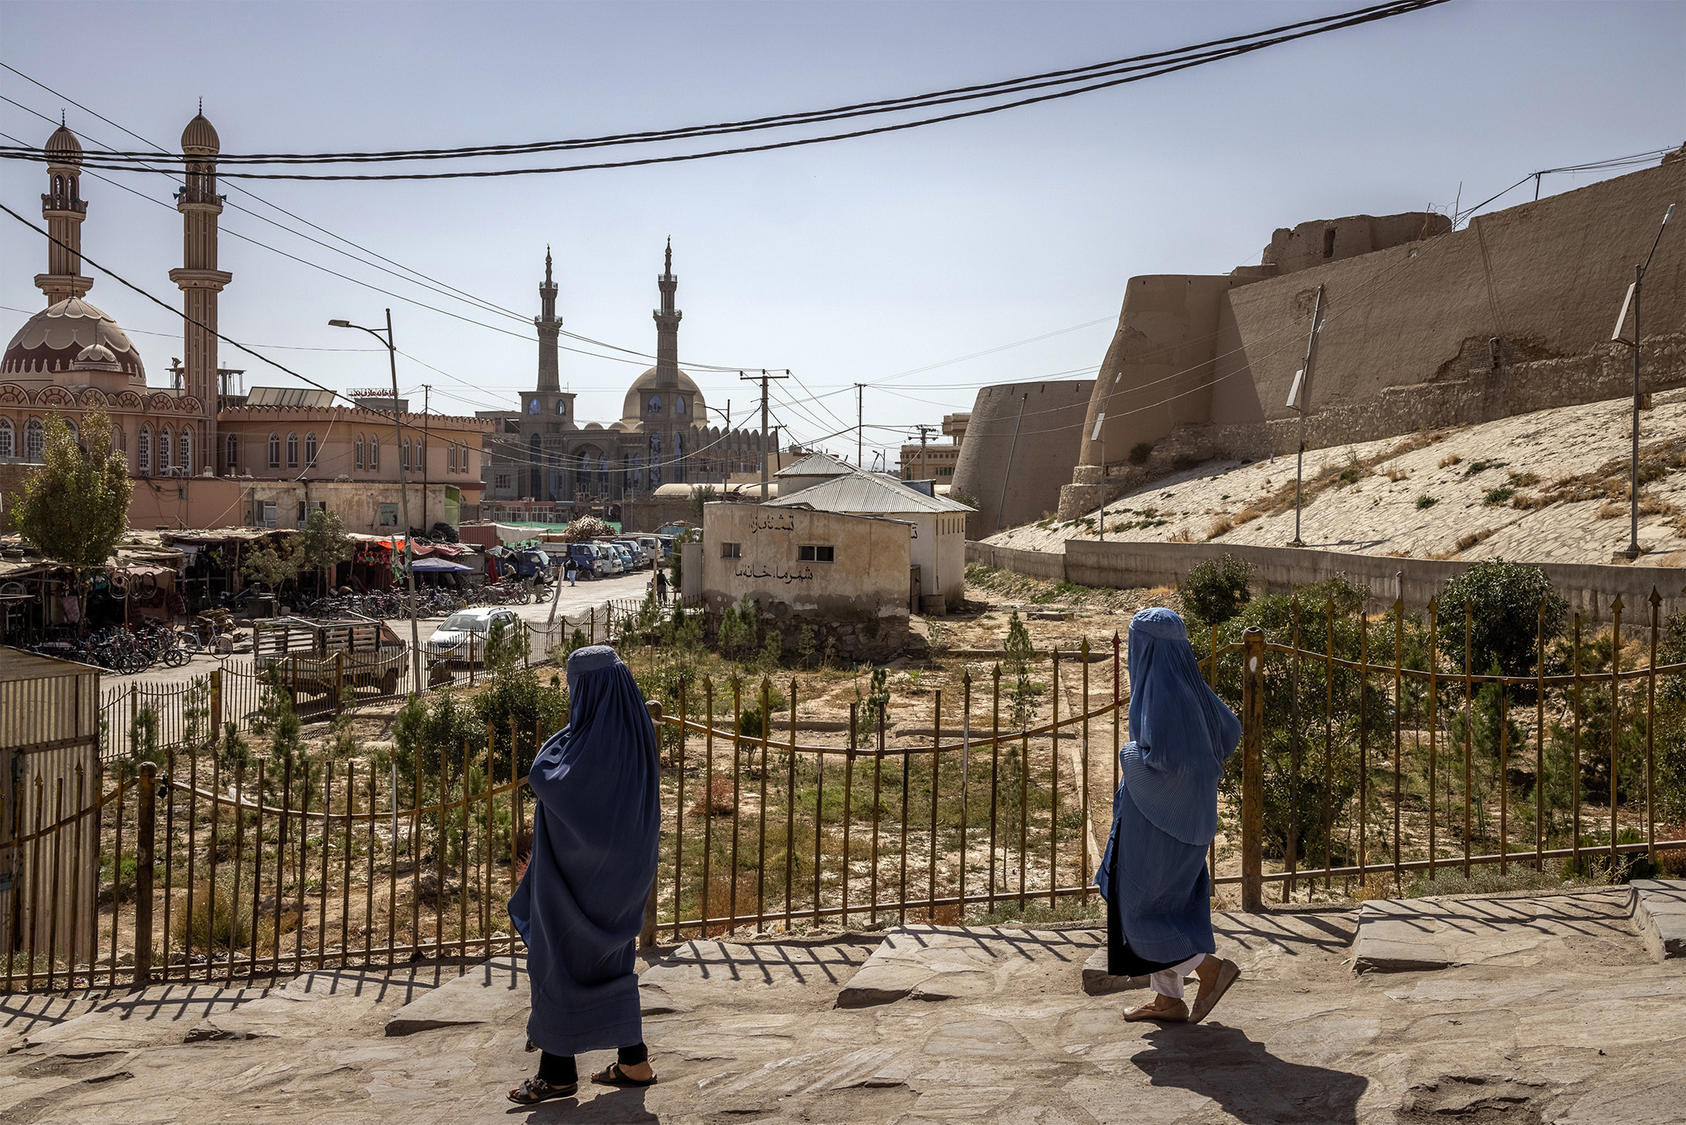 Women in Ghazni, Afghanistan. September 22, 2021. (Jim Huylebroek/The New York Times)